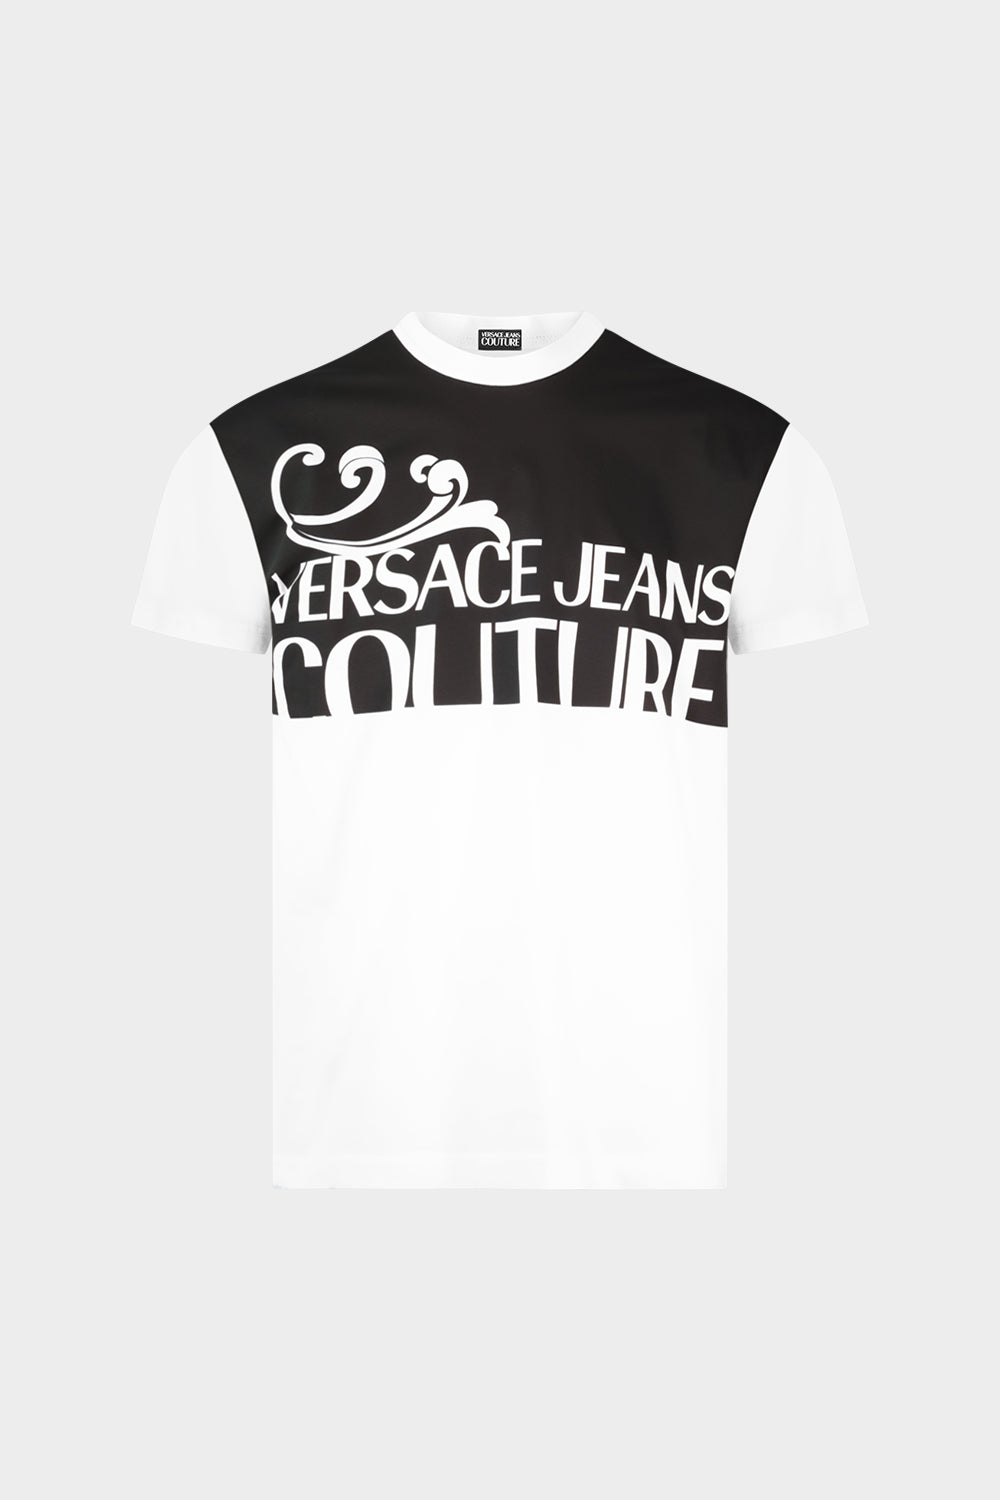 חולצת טי שירט שרוול קצר לגברים הדפס VERSACE Vendome online | ונדום .